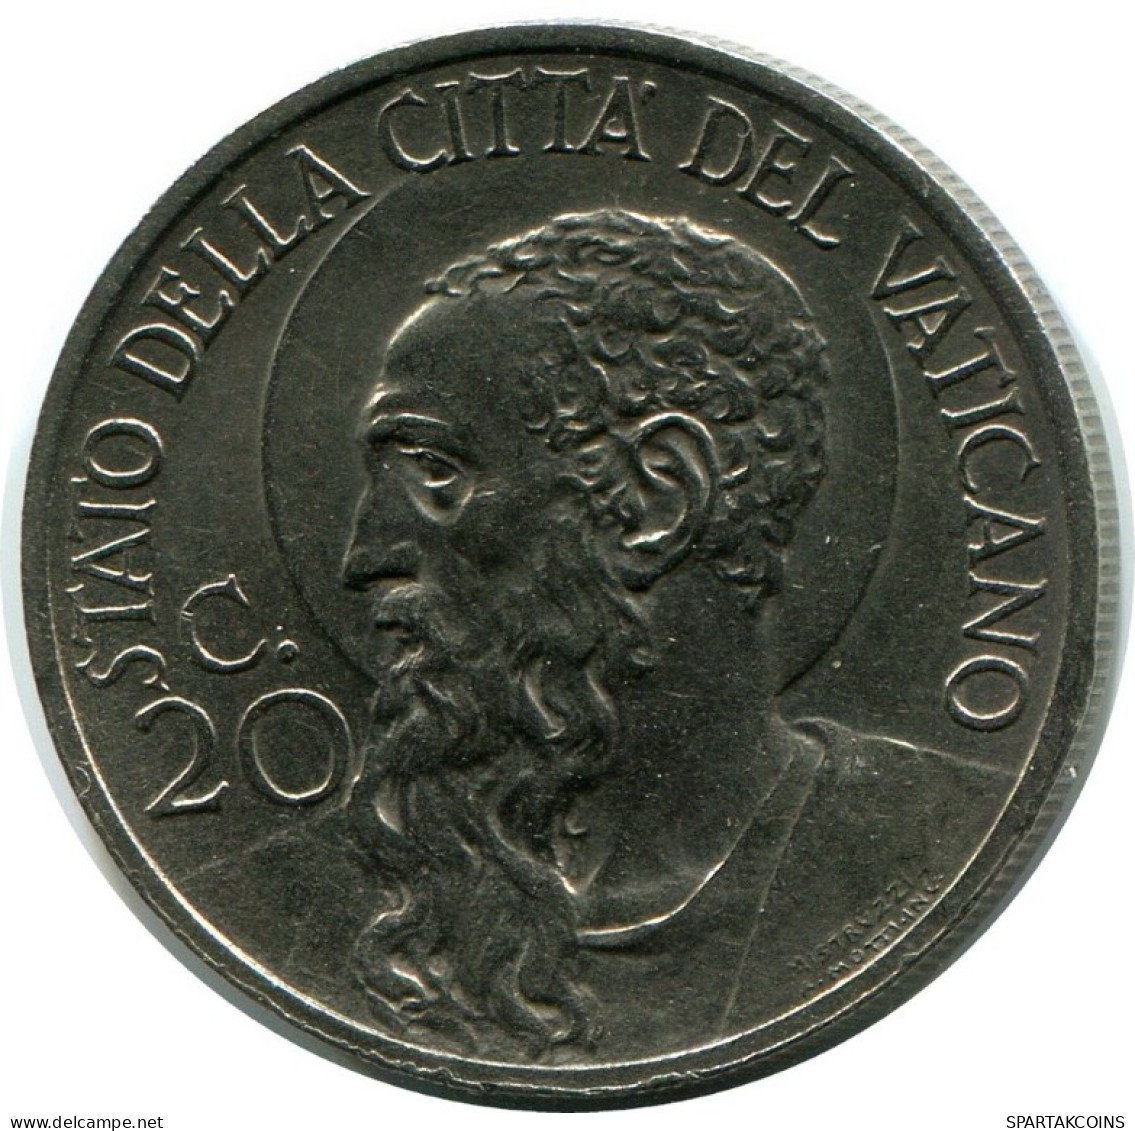 20 CENTESIMI 1932 VATICAN Coin Pius XI (1922-1939) #AH343.16.U.A - Vaticano